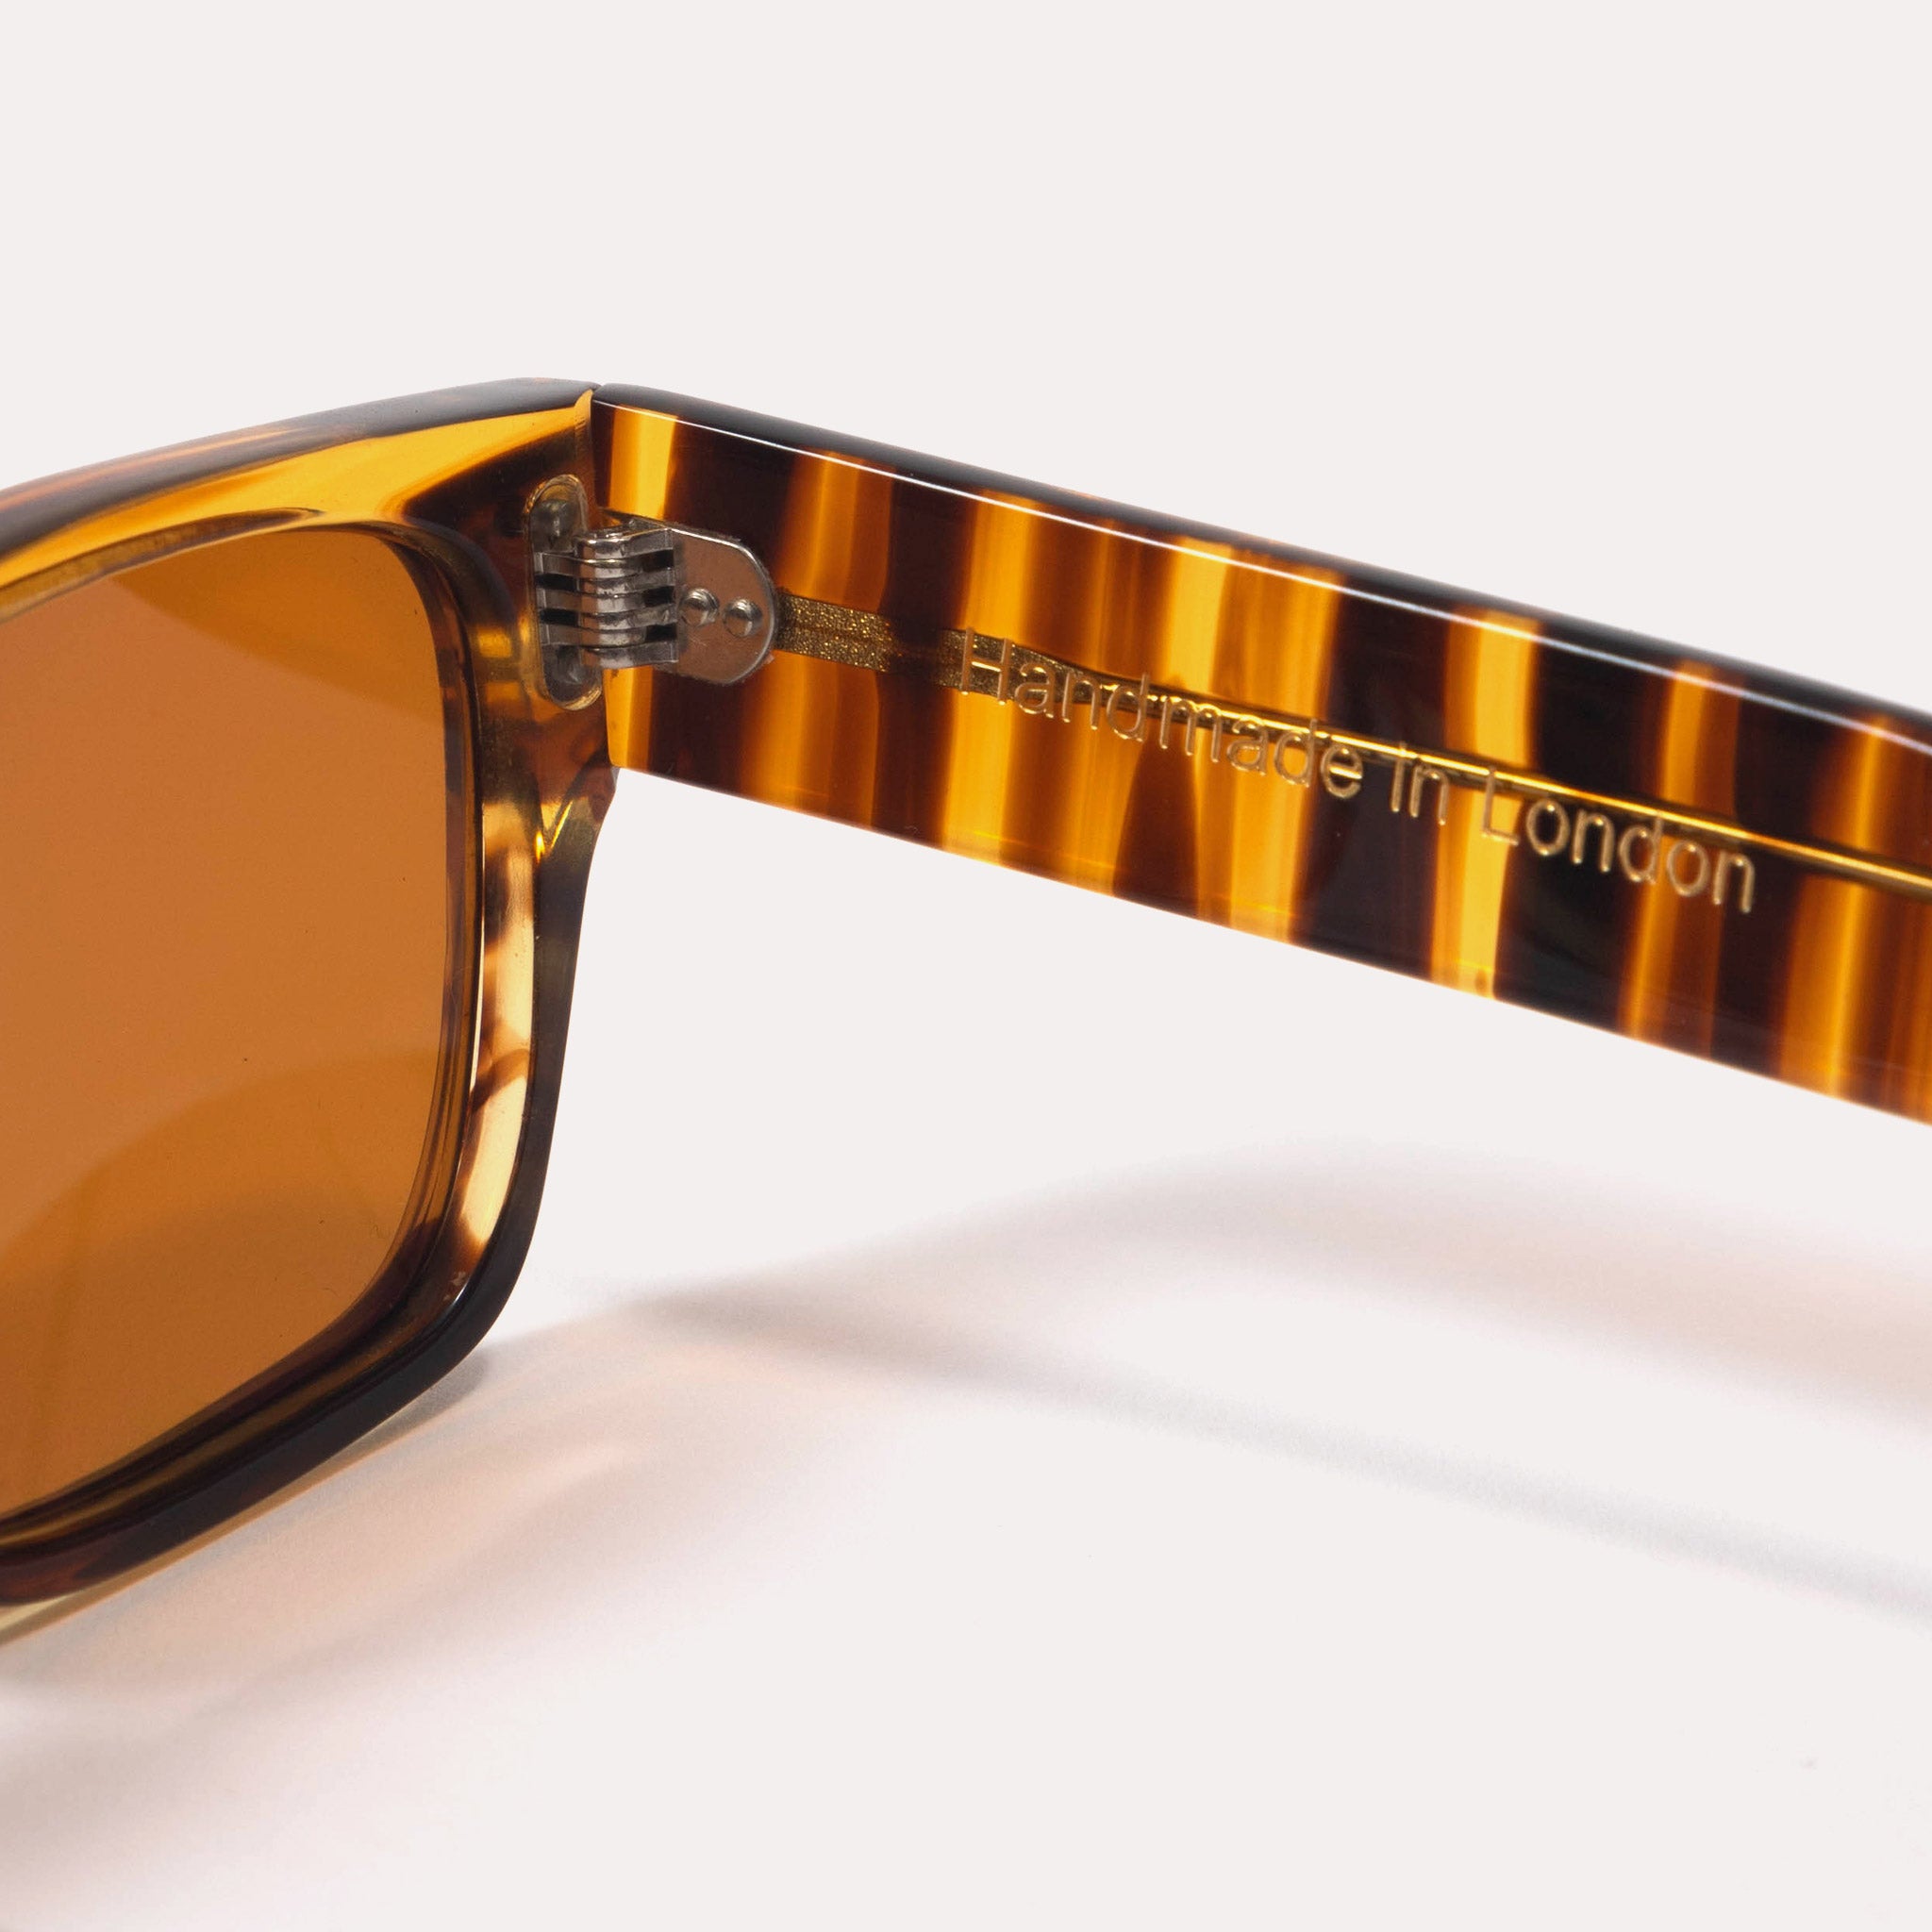 Fera Sunglasses - Tiger Stripe